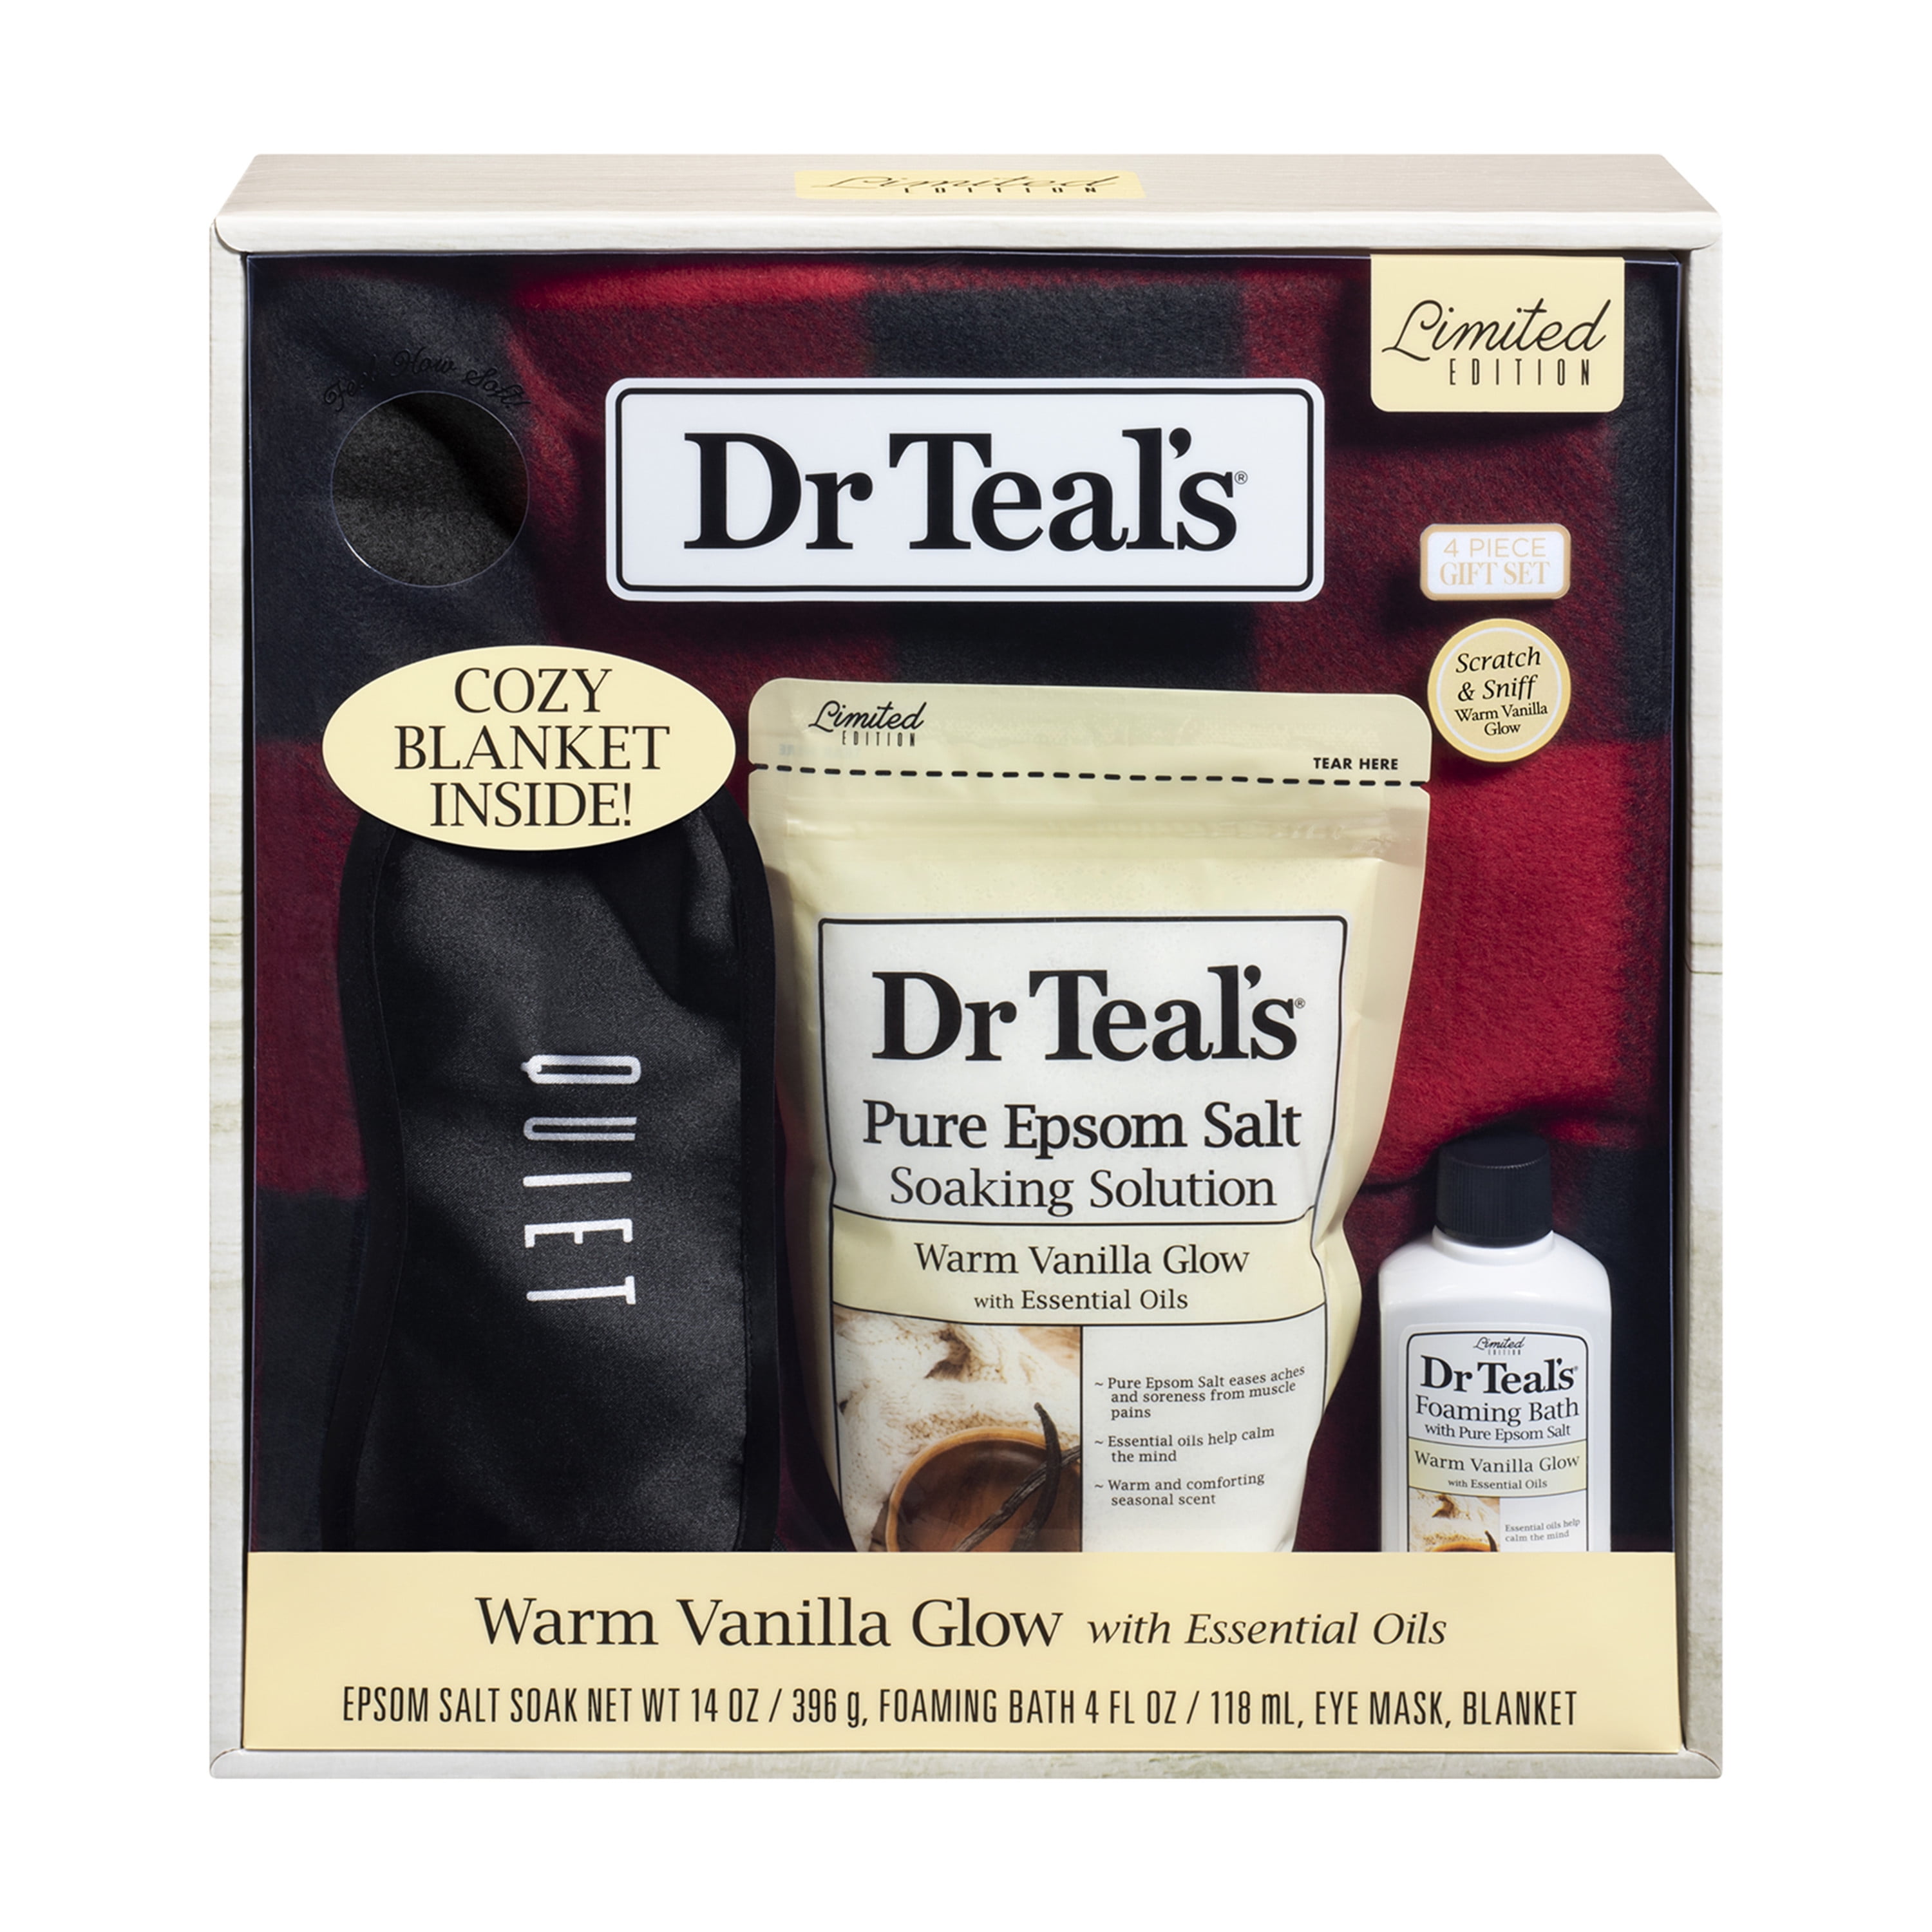 Dr Teals Warm Vanilla Glow Bath Gift Set with Blanket, 4 Piece